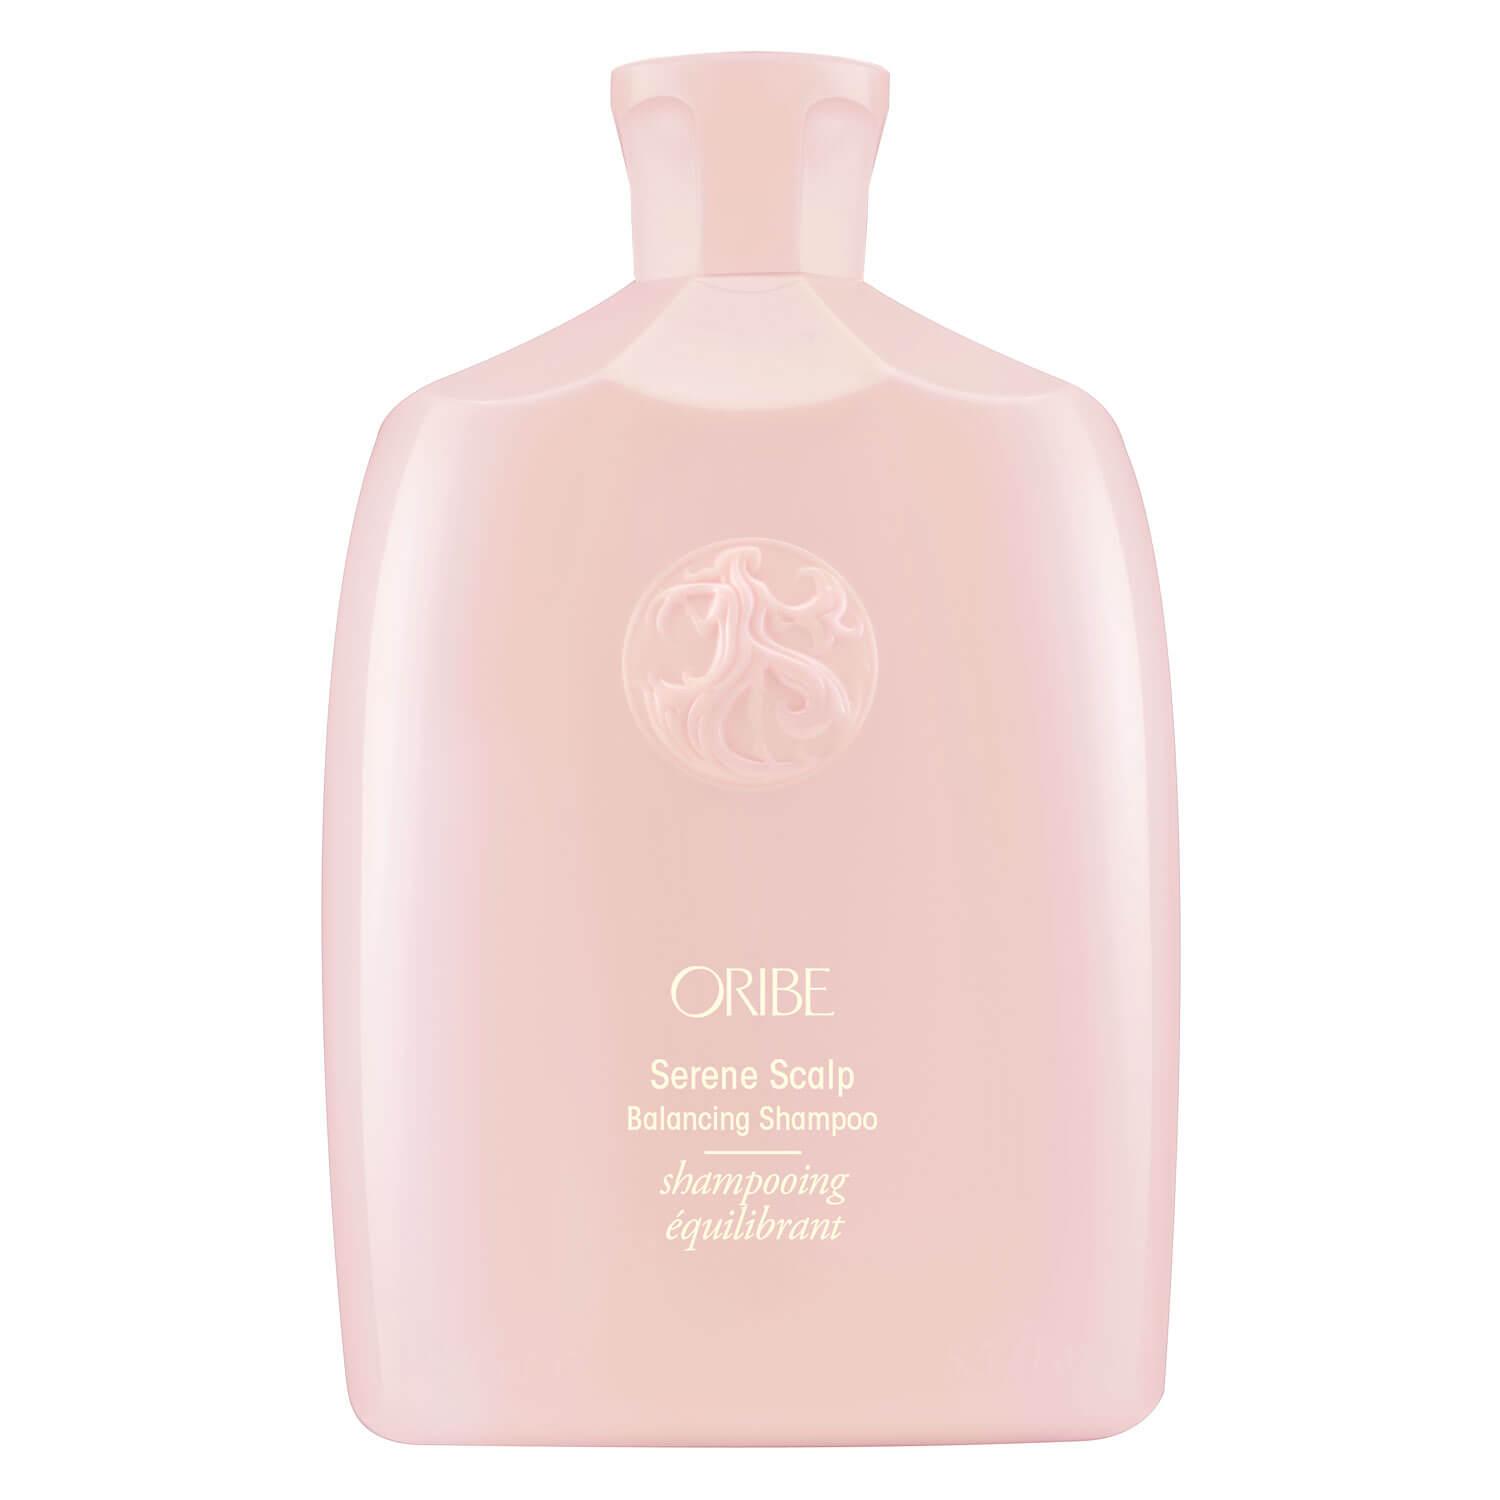 Oribe Care - Serene Scalp Balancing Shampoo